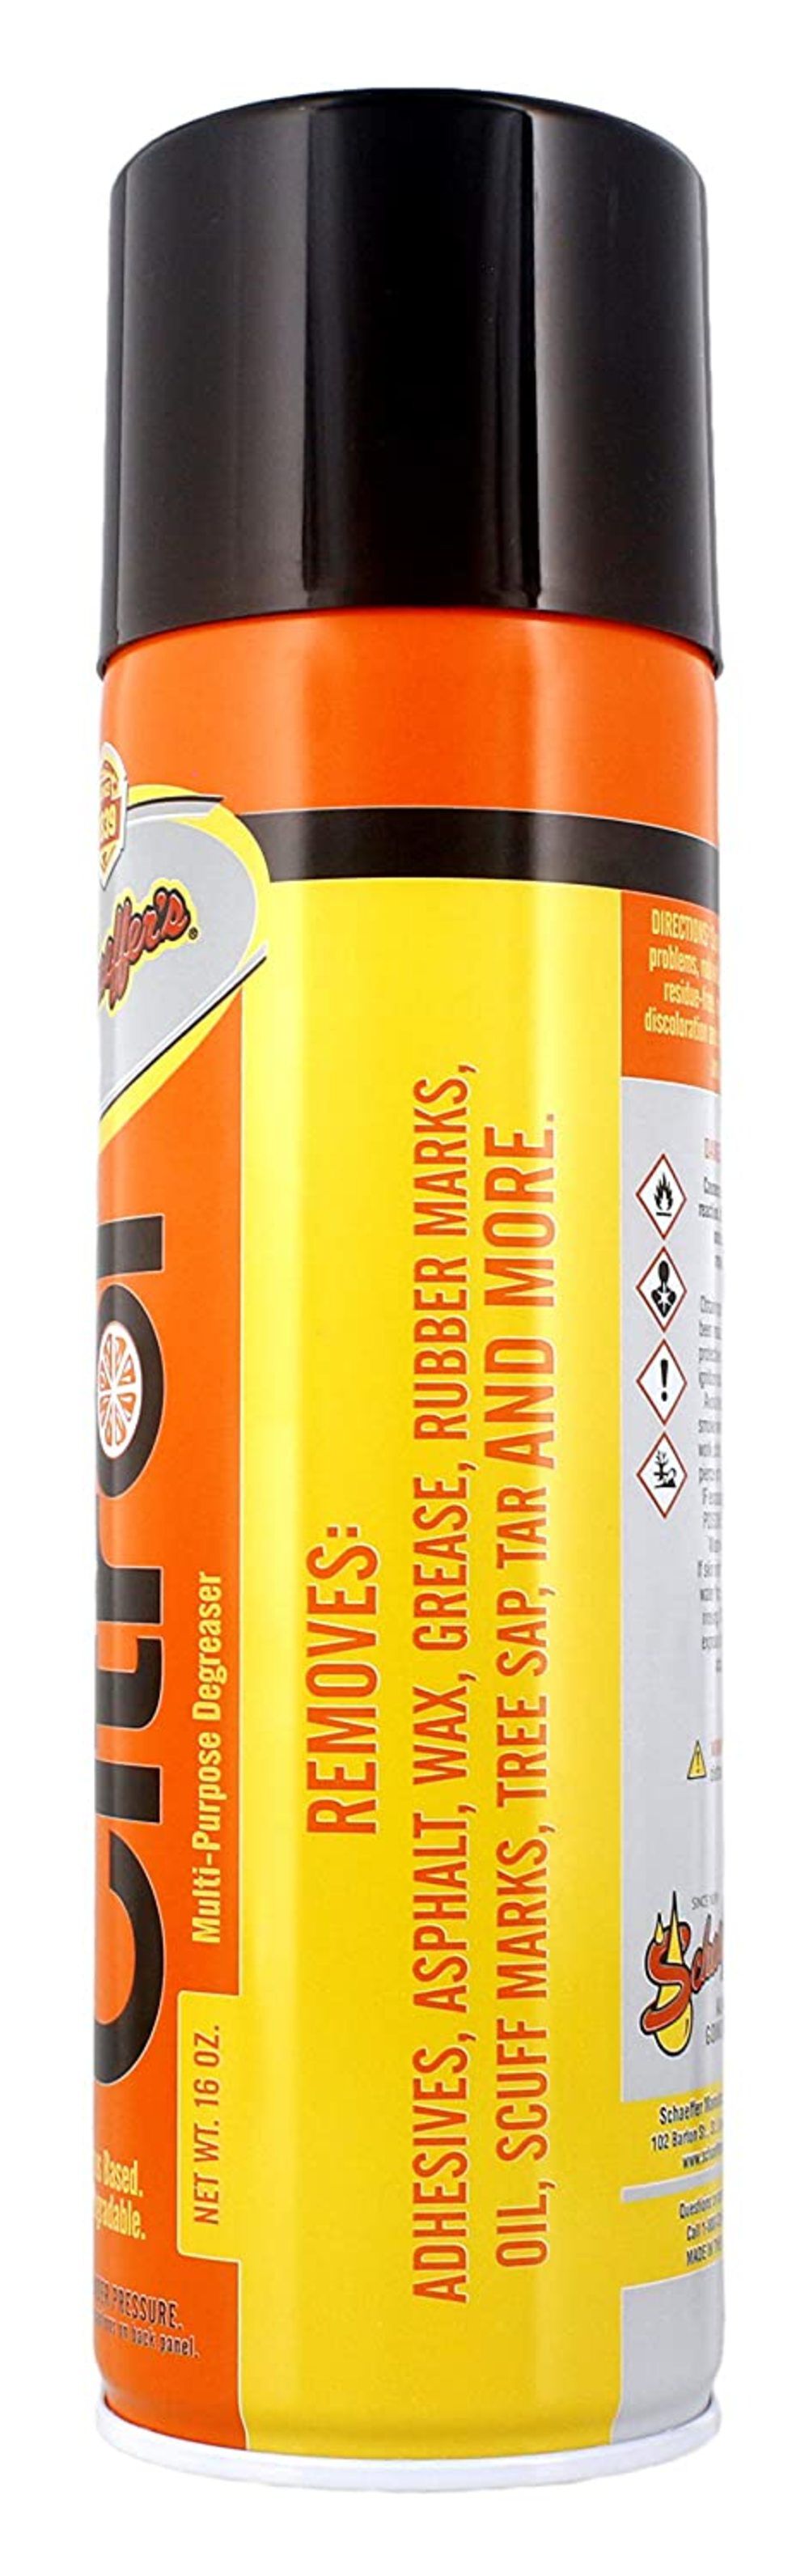 Mfg 16 Oz Multipurpose Biodegradable Citrus Based Cleaner & Degreaser 0266-12